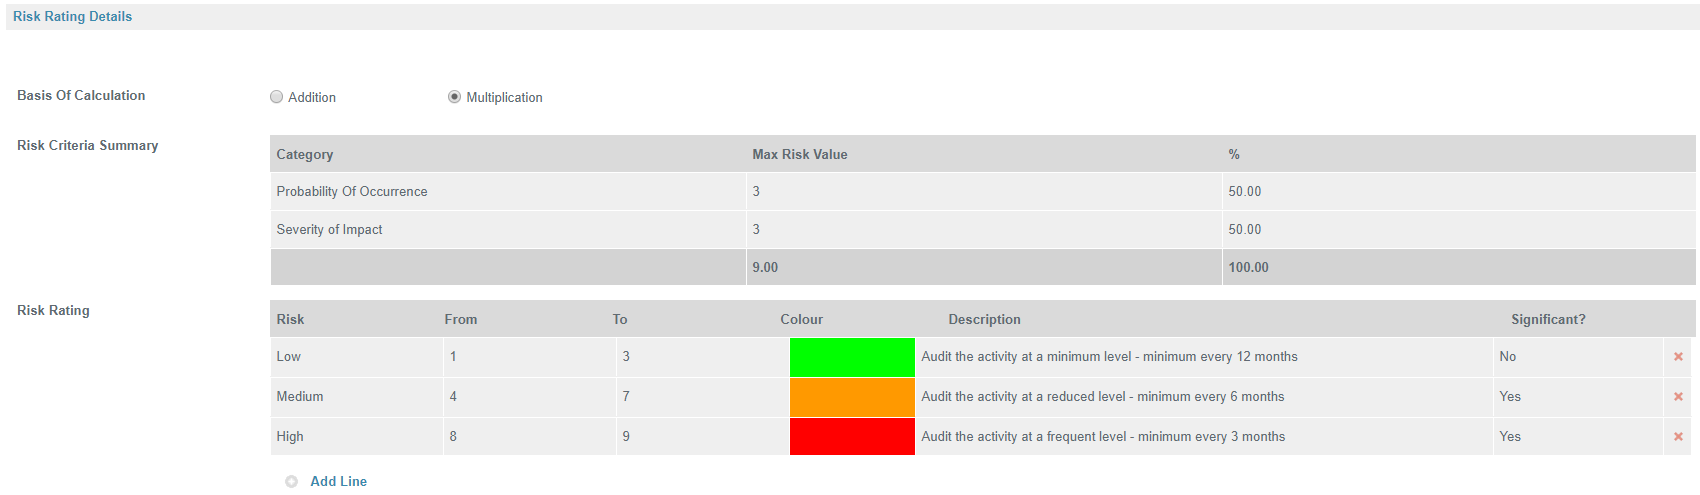 Risk Rating Details - RAM Risk Assessment Model Tool - Safefood 360°